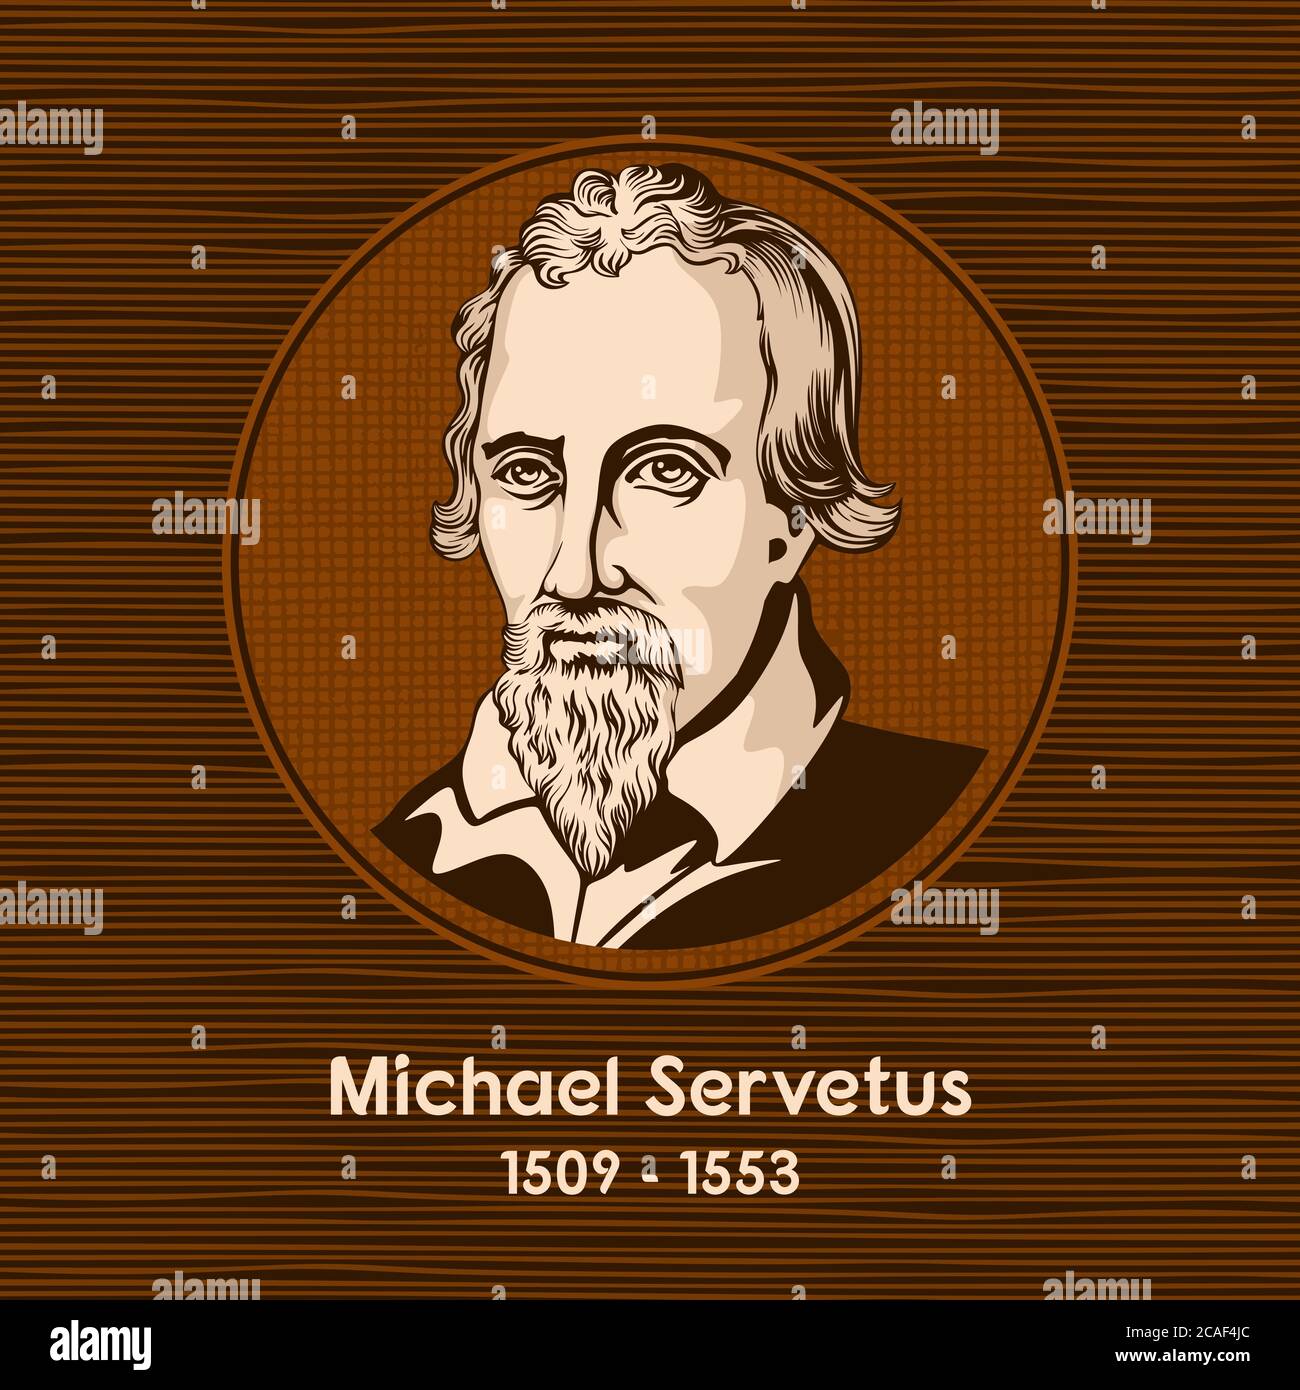 Michael Servetus (1509 - 1553), war ein spanischer Theologe, Arzt, Kartograph und Renaissance Humanist. Stock Vektor